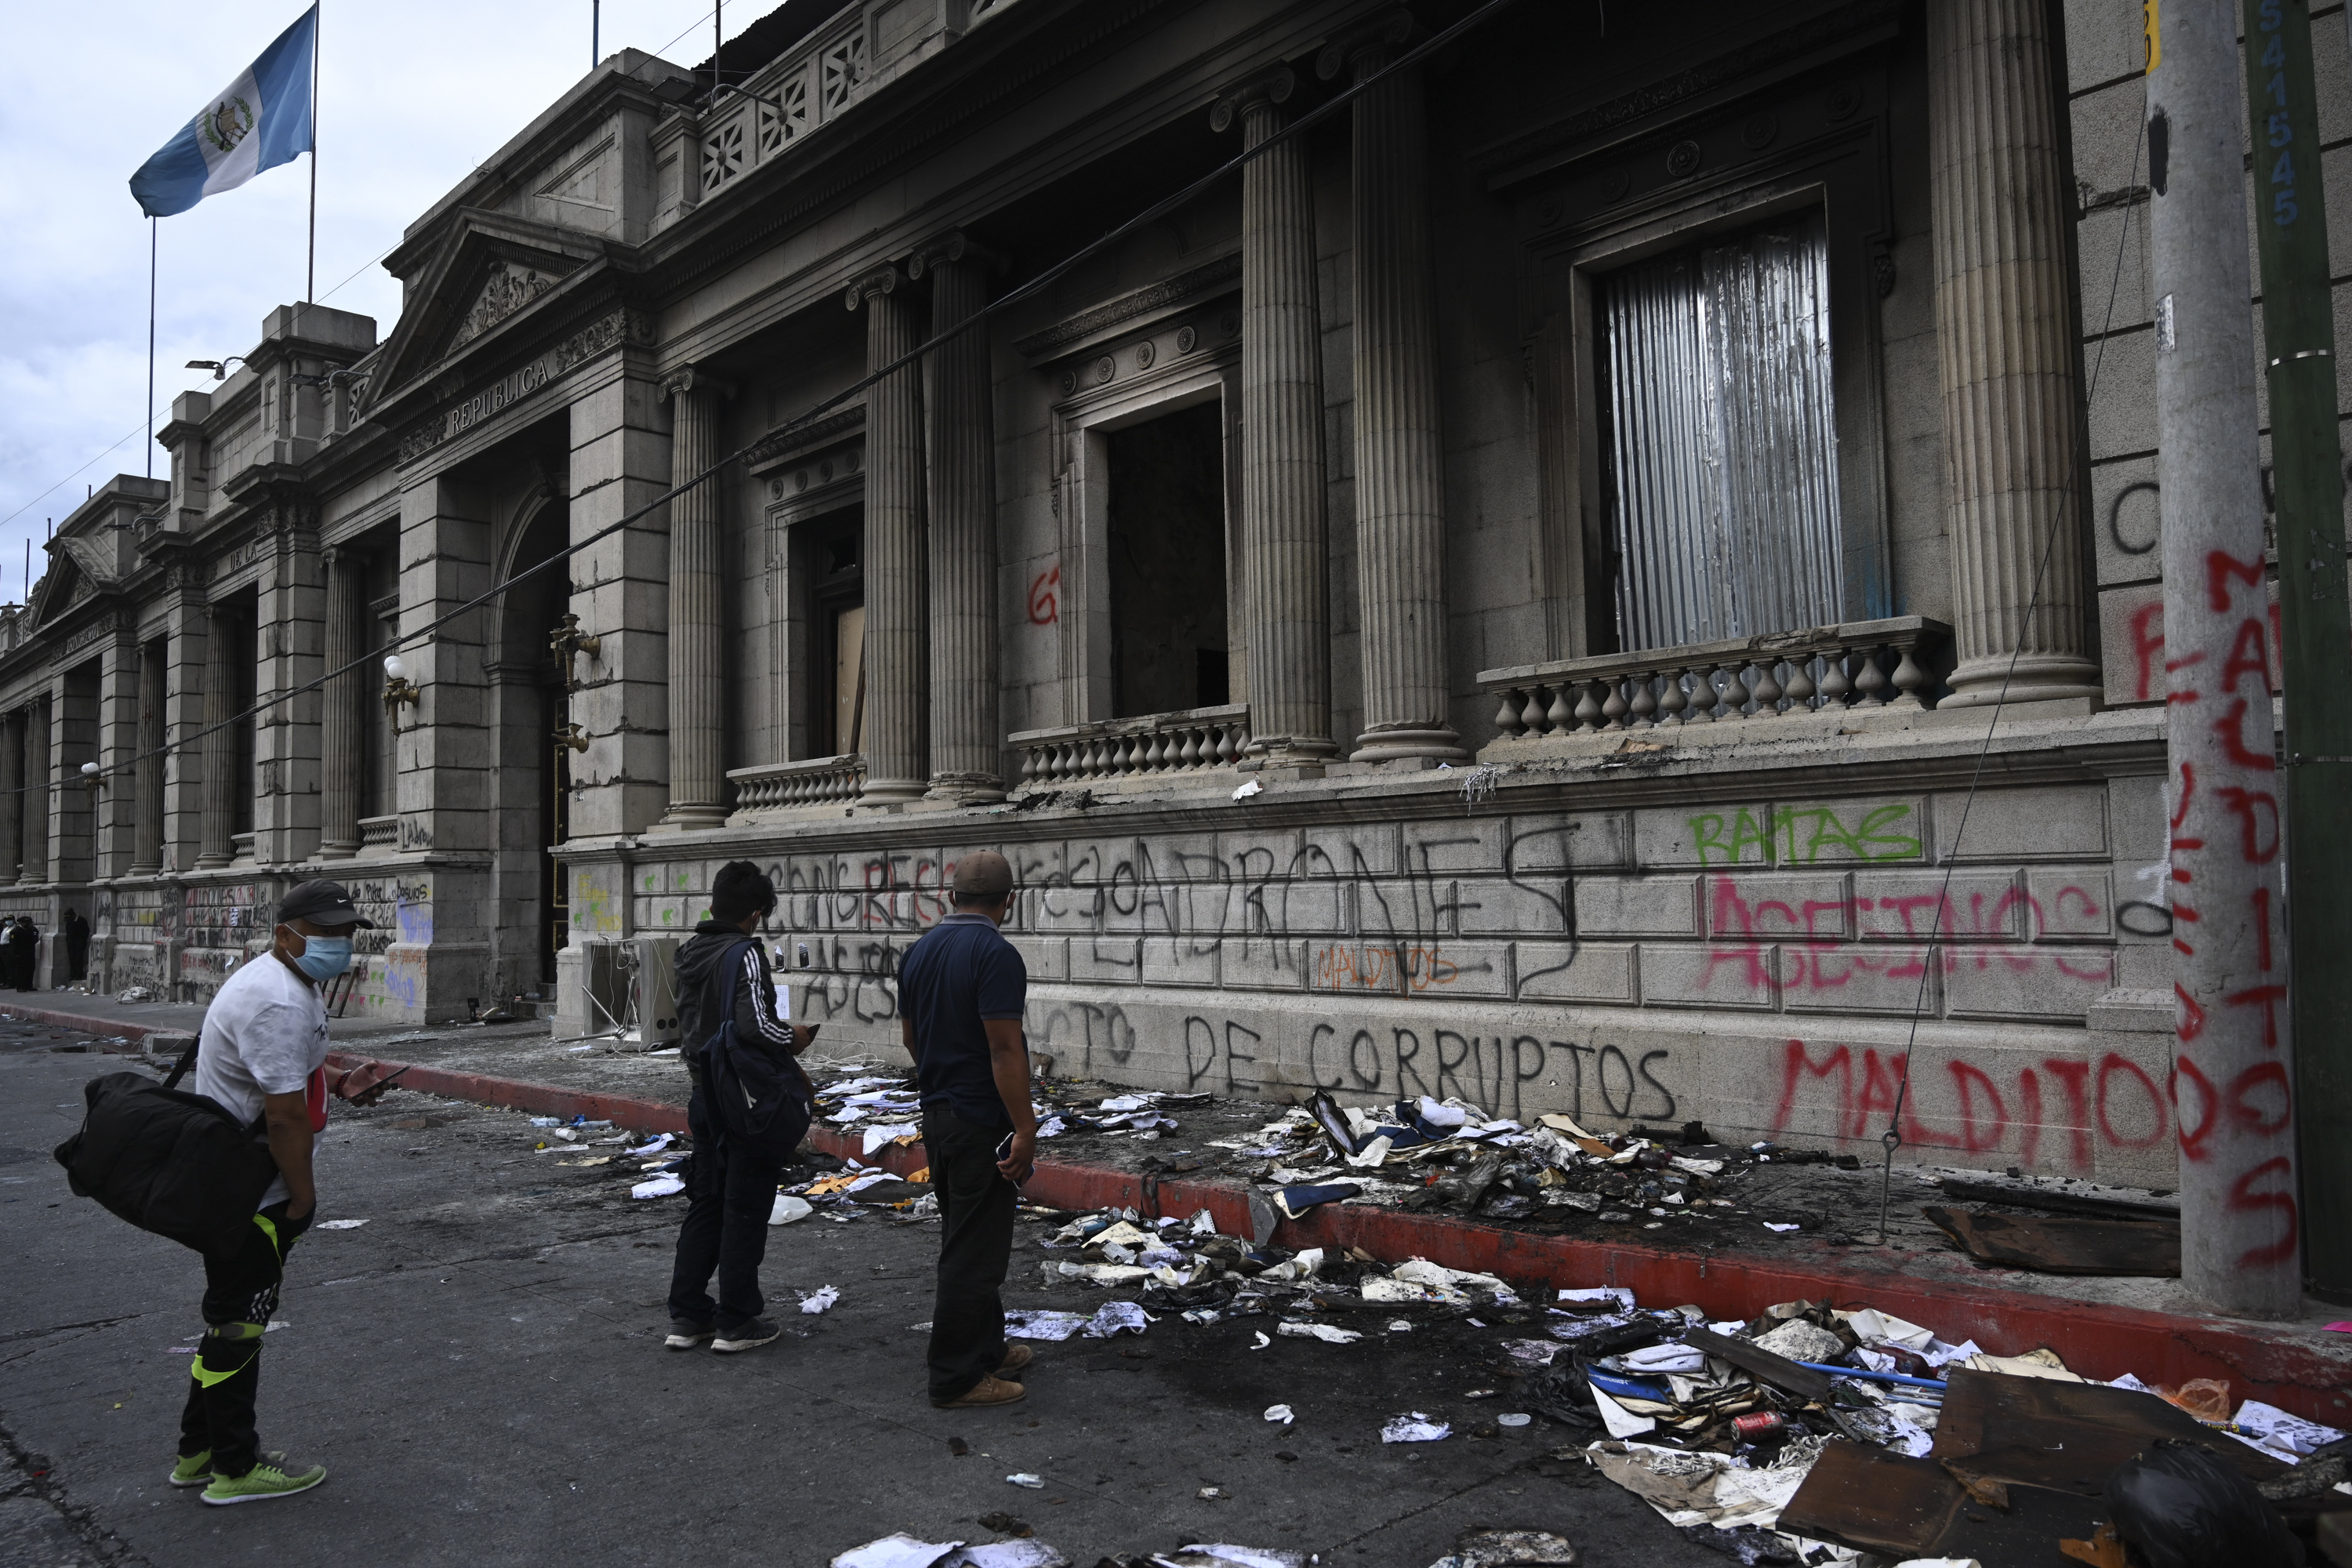 Manifestantes incendian sede del Congreso de Guatemala